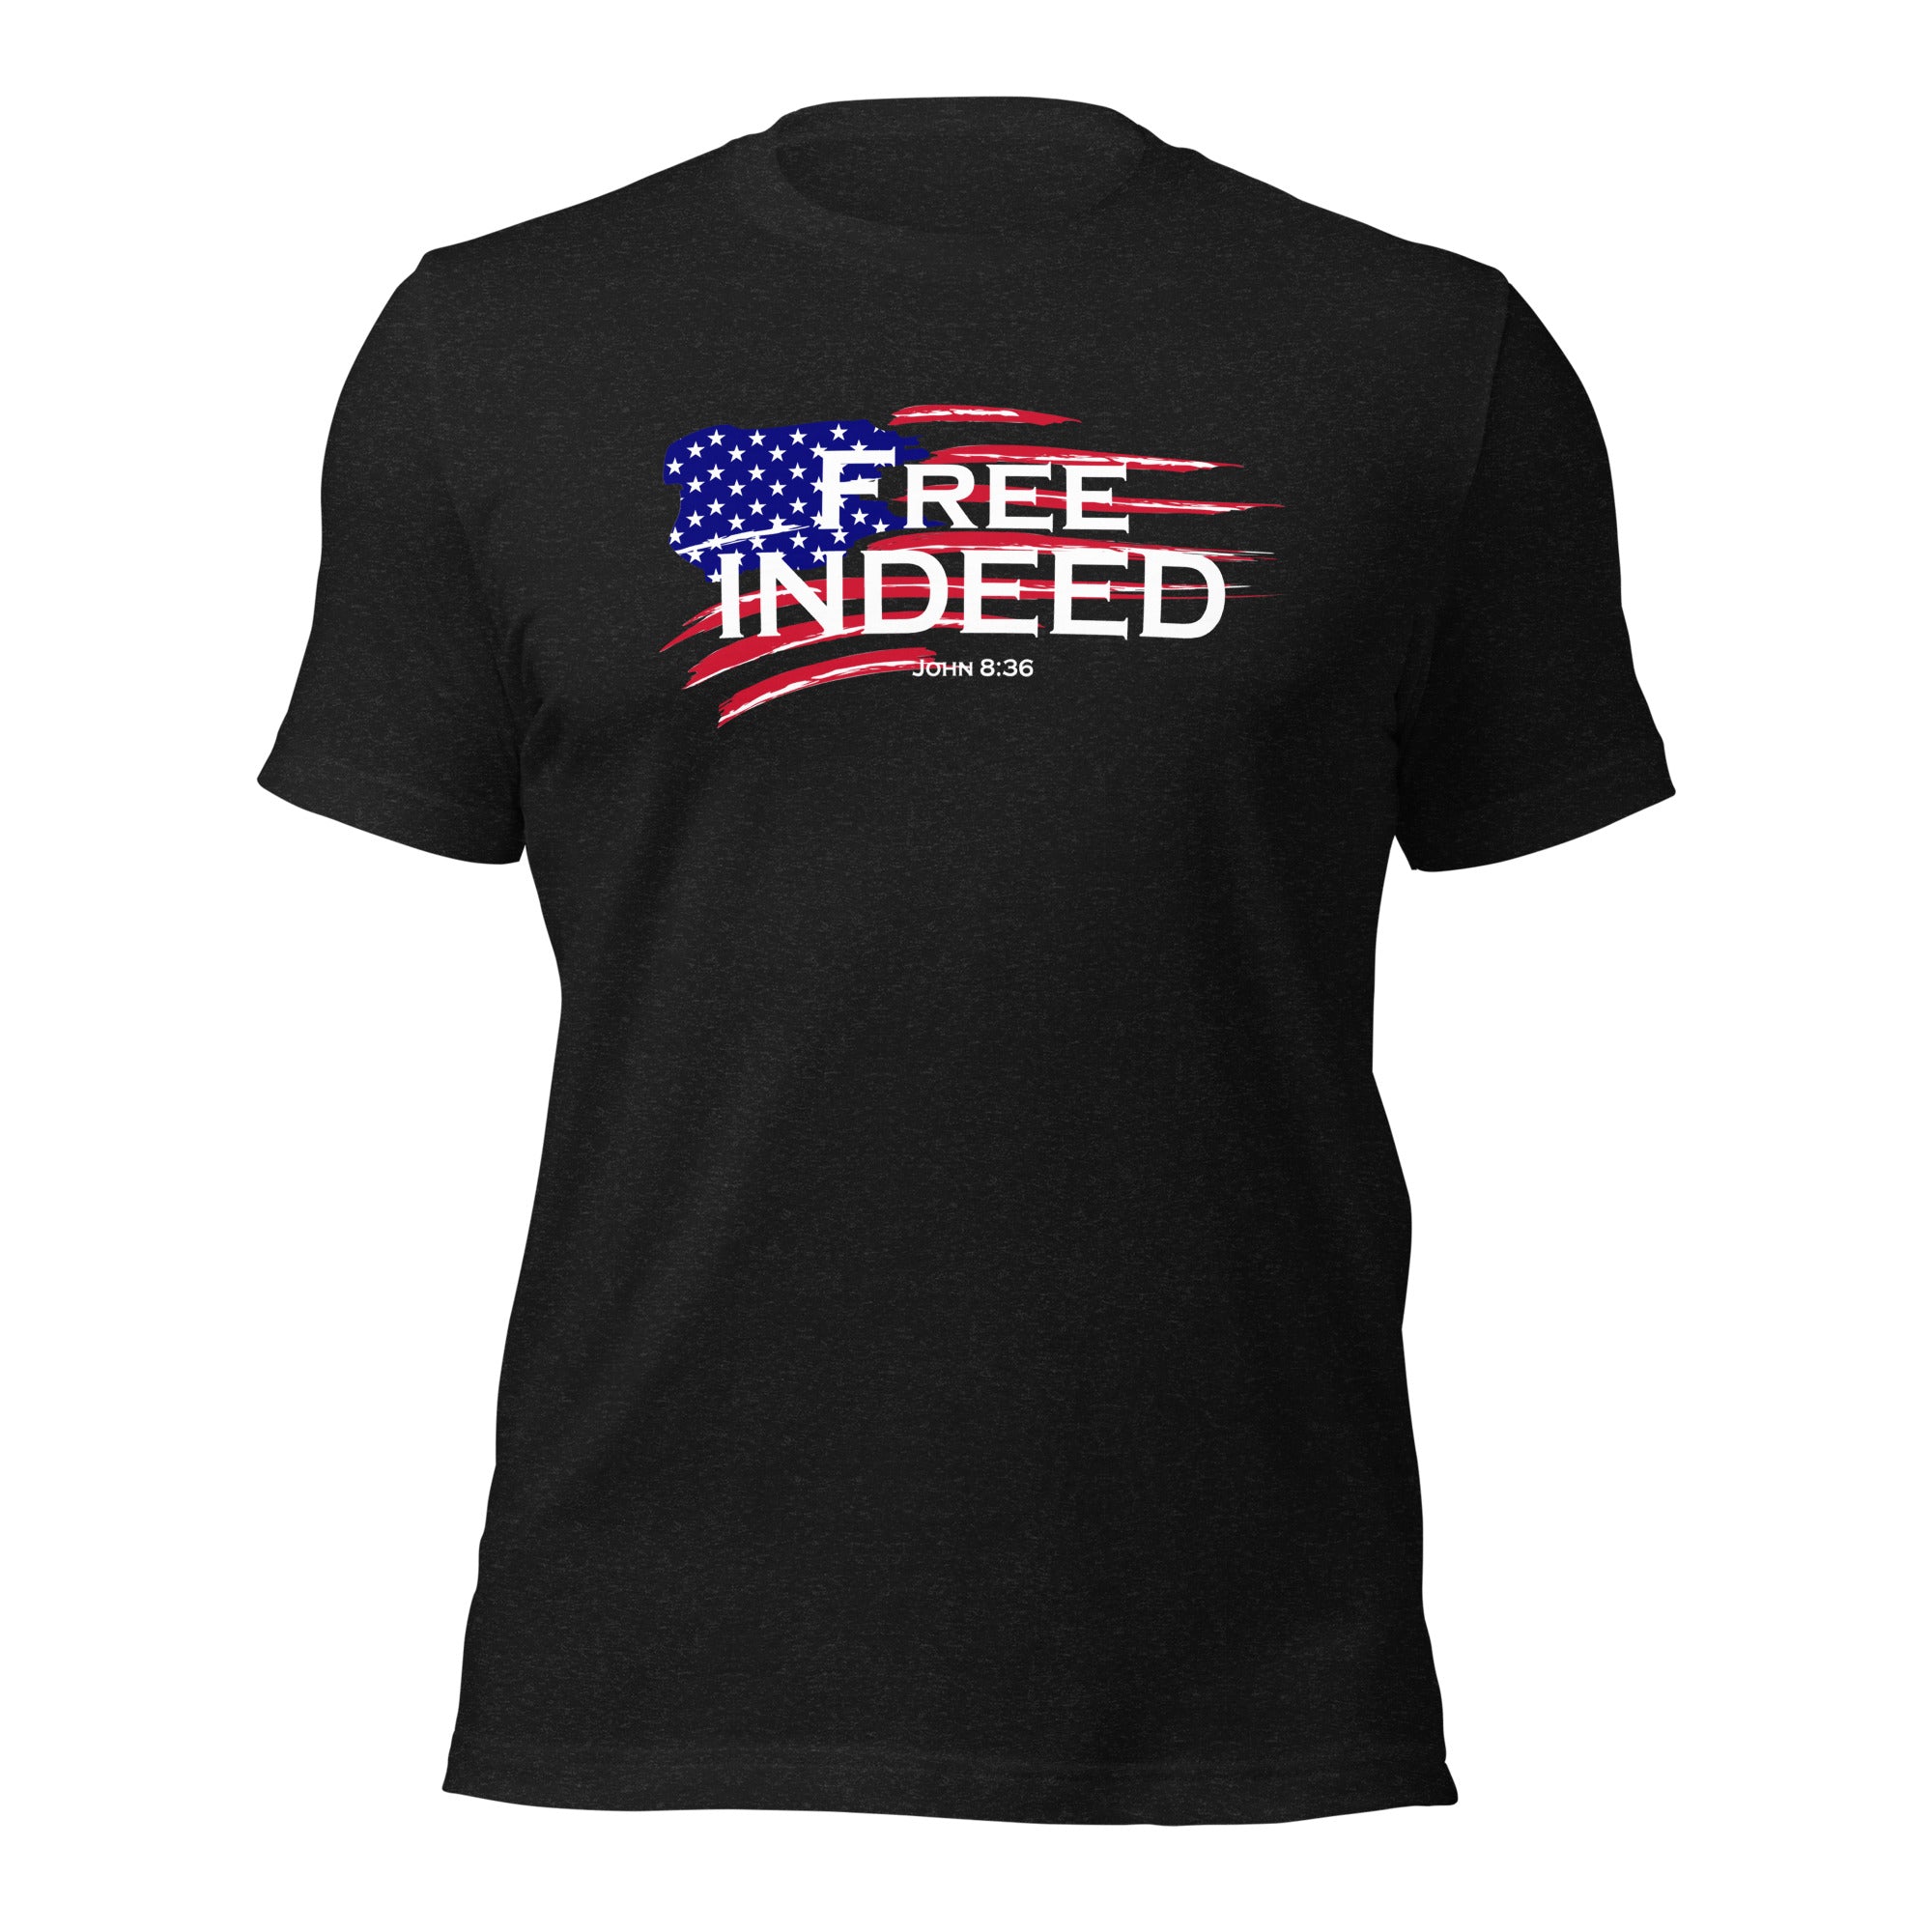 Free Indeed Tee